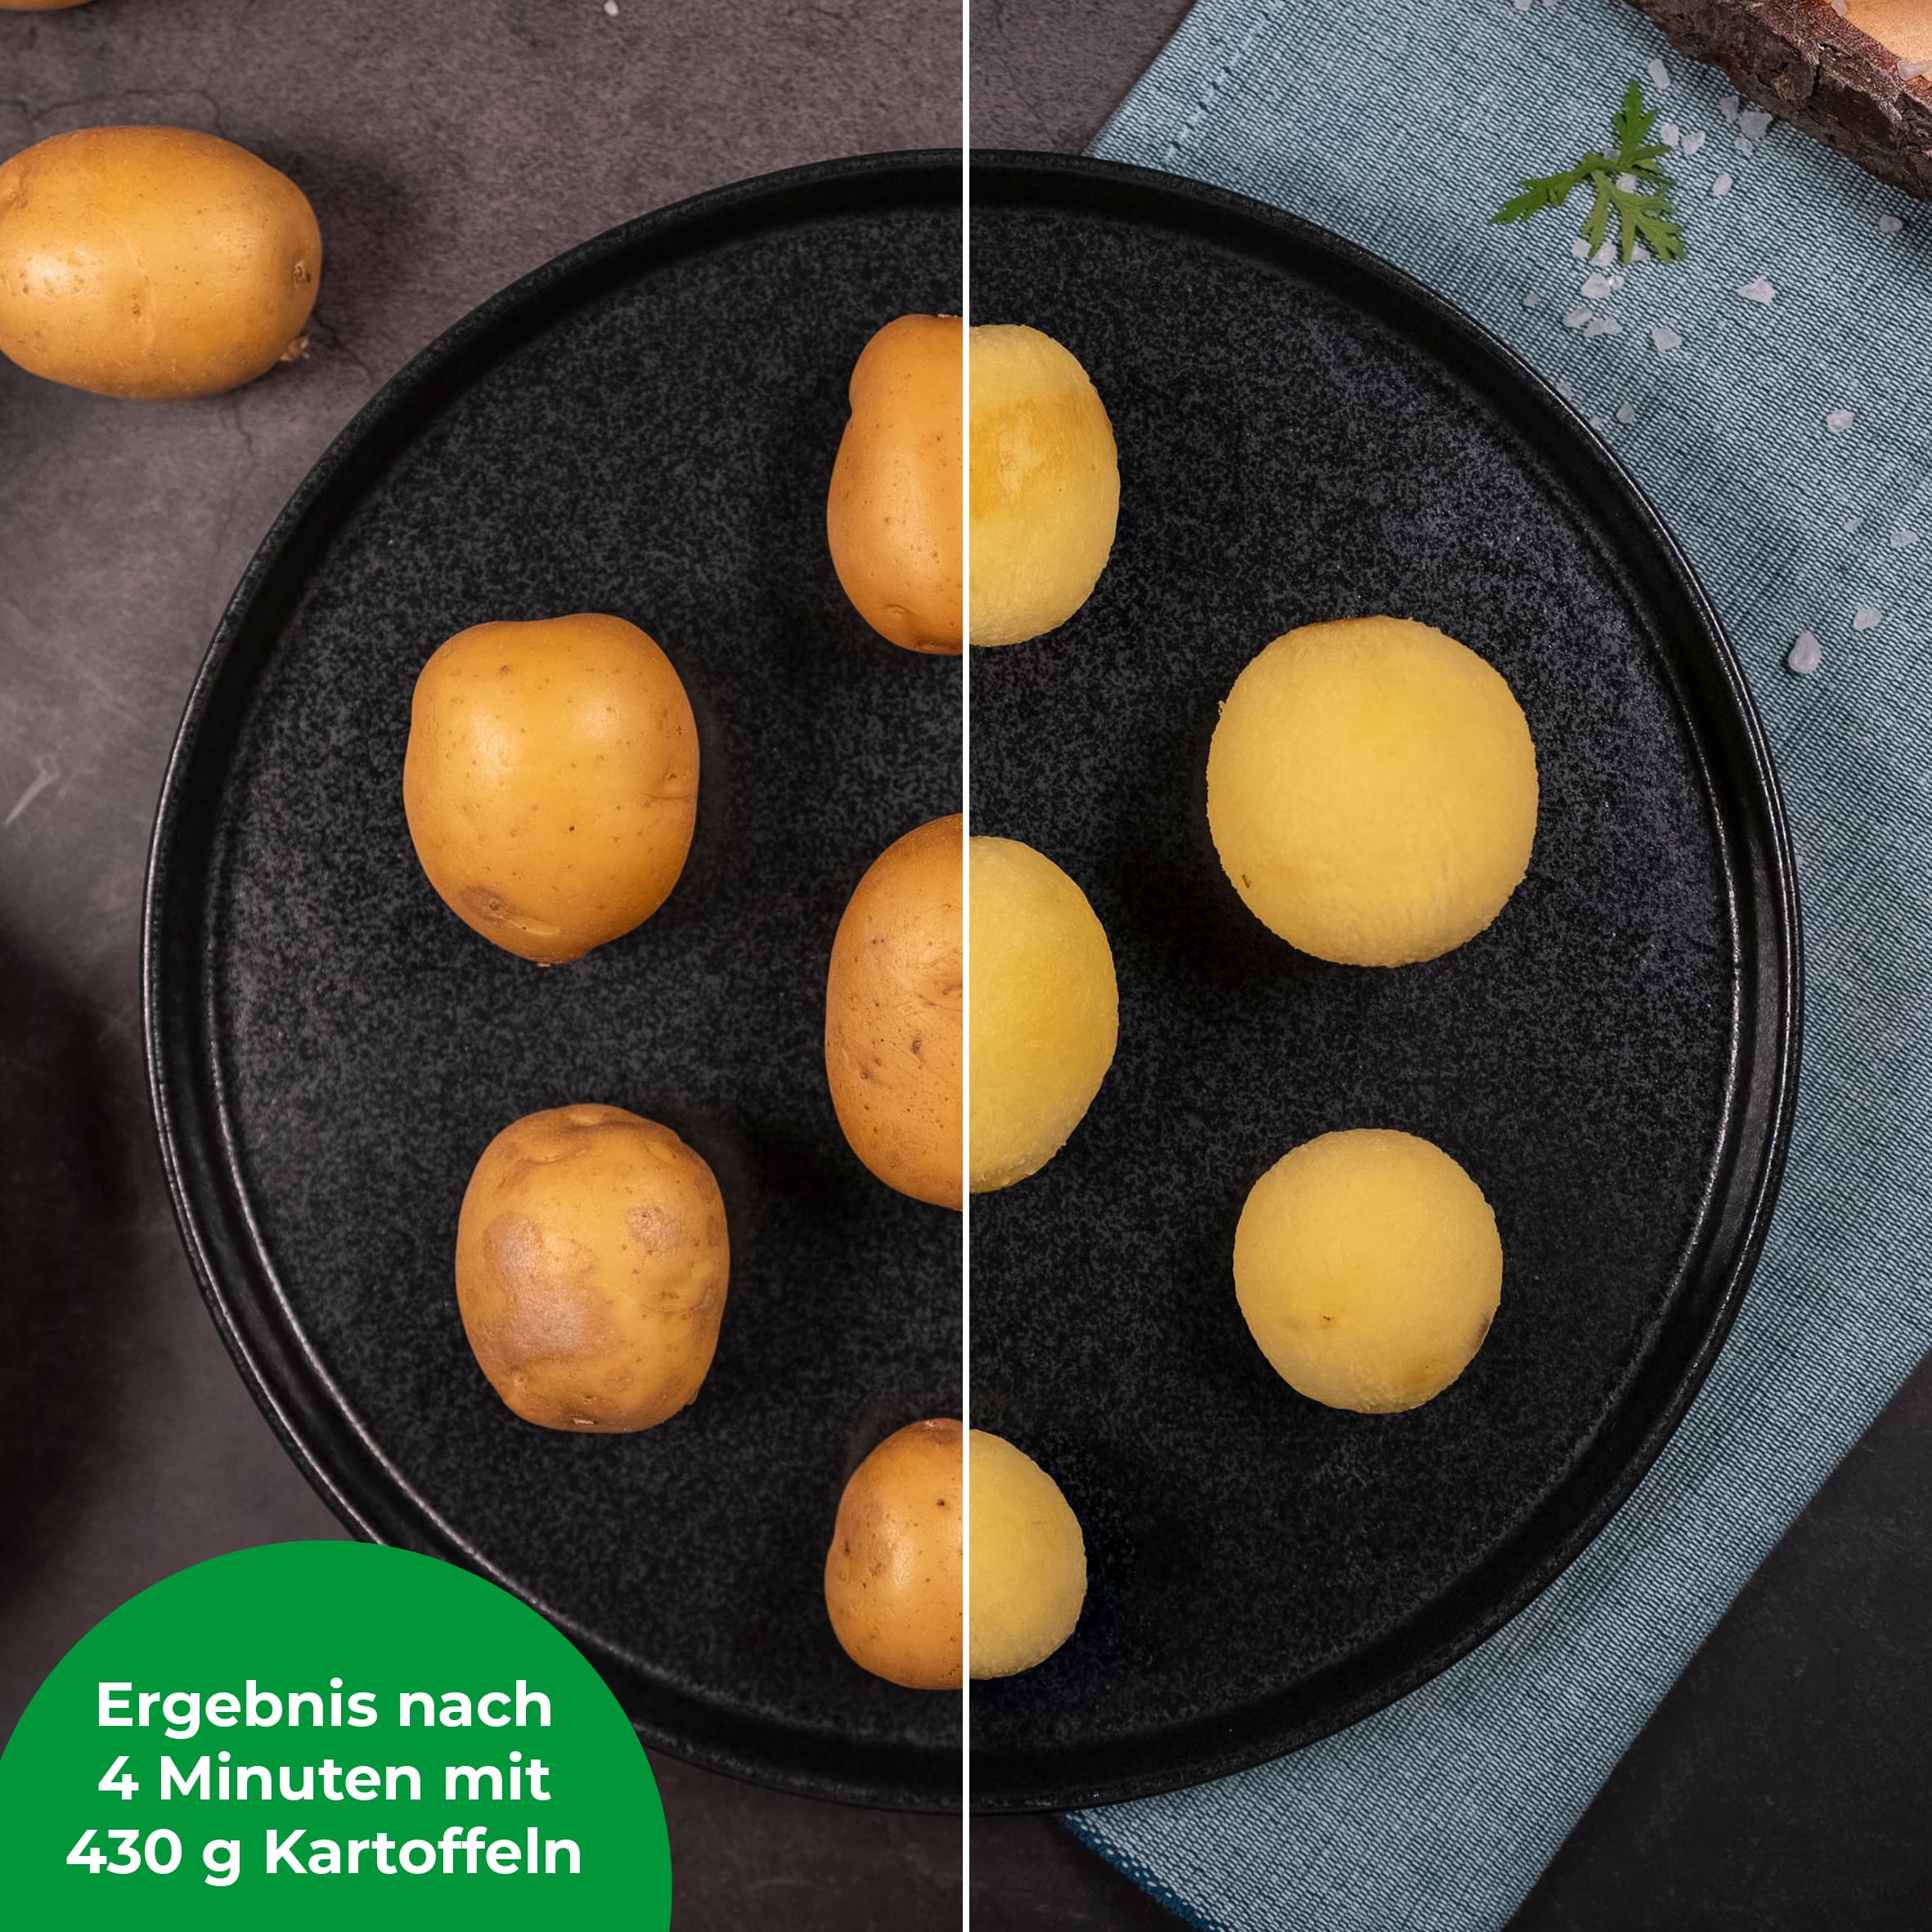 [B-Ware] WunderPeeler® | V2 | Kartoffelschäler-Aufsatz für Monsieur Cuisine Connect, Trend und Smart - Wundermix GmbH